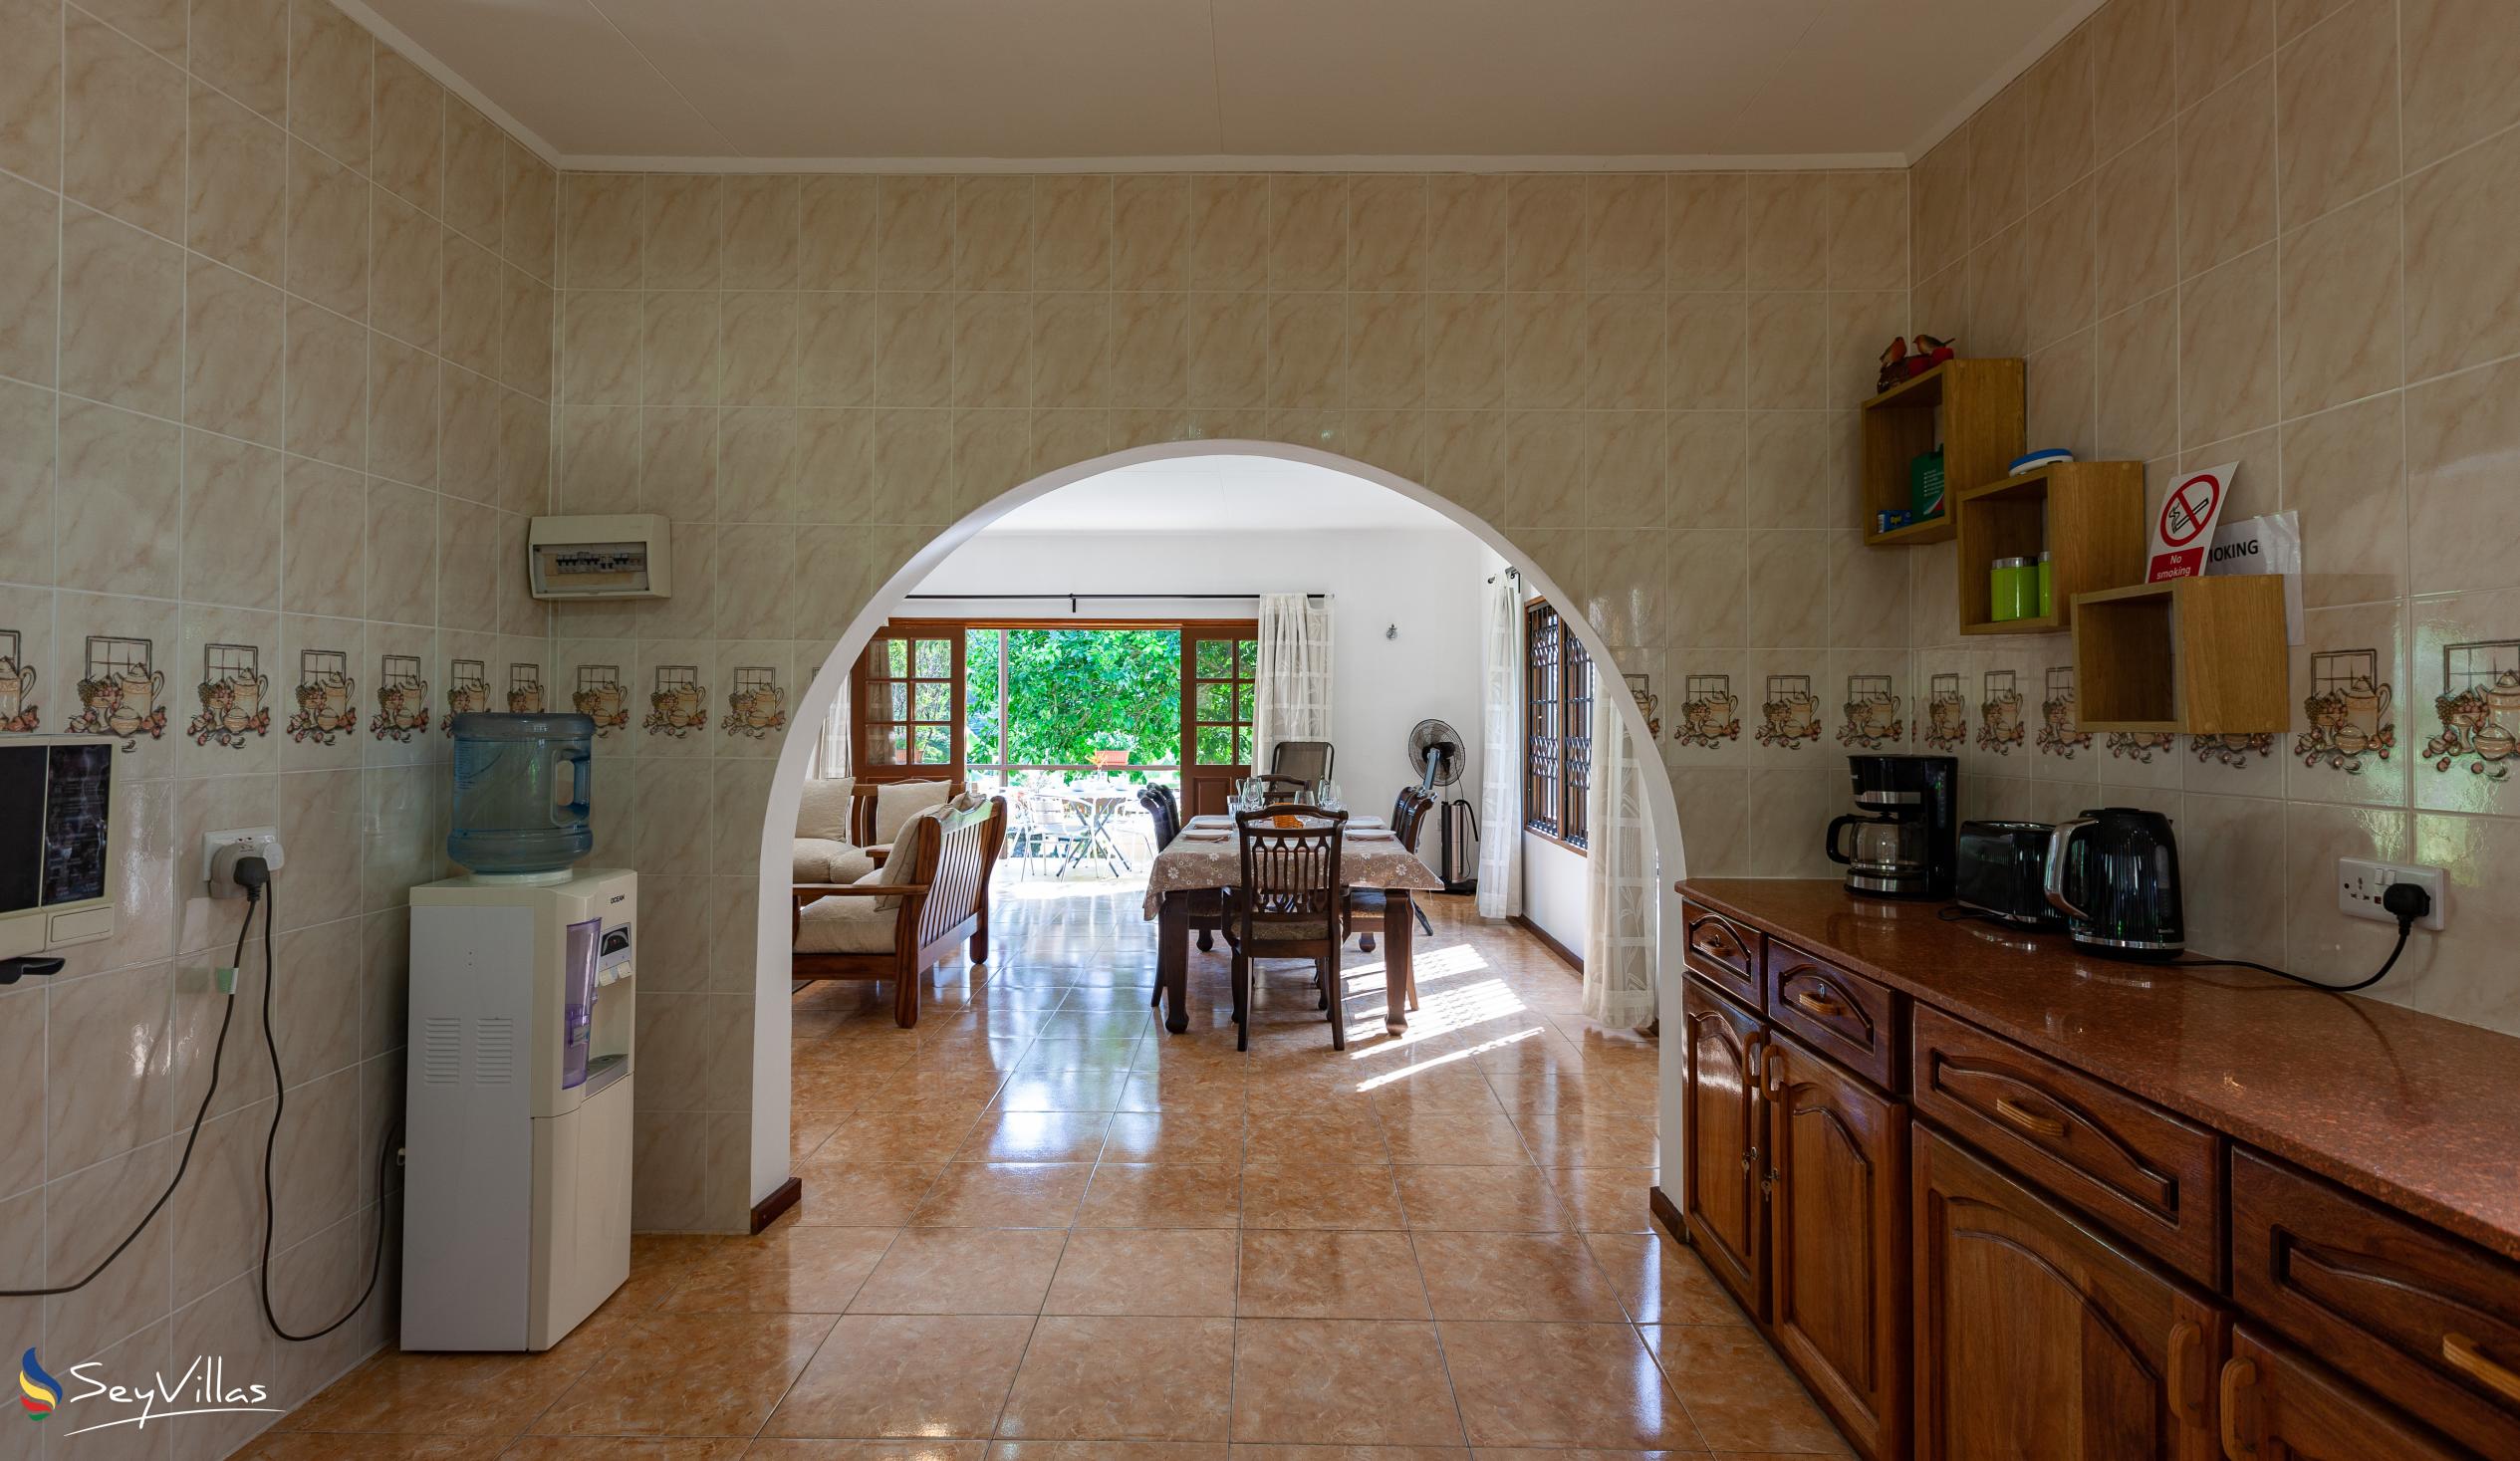 Photo 36: La Casa Grande - Indoor area - Praslin (Seychelles)